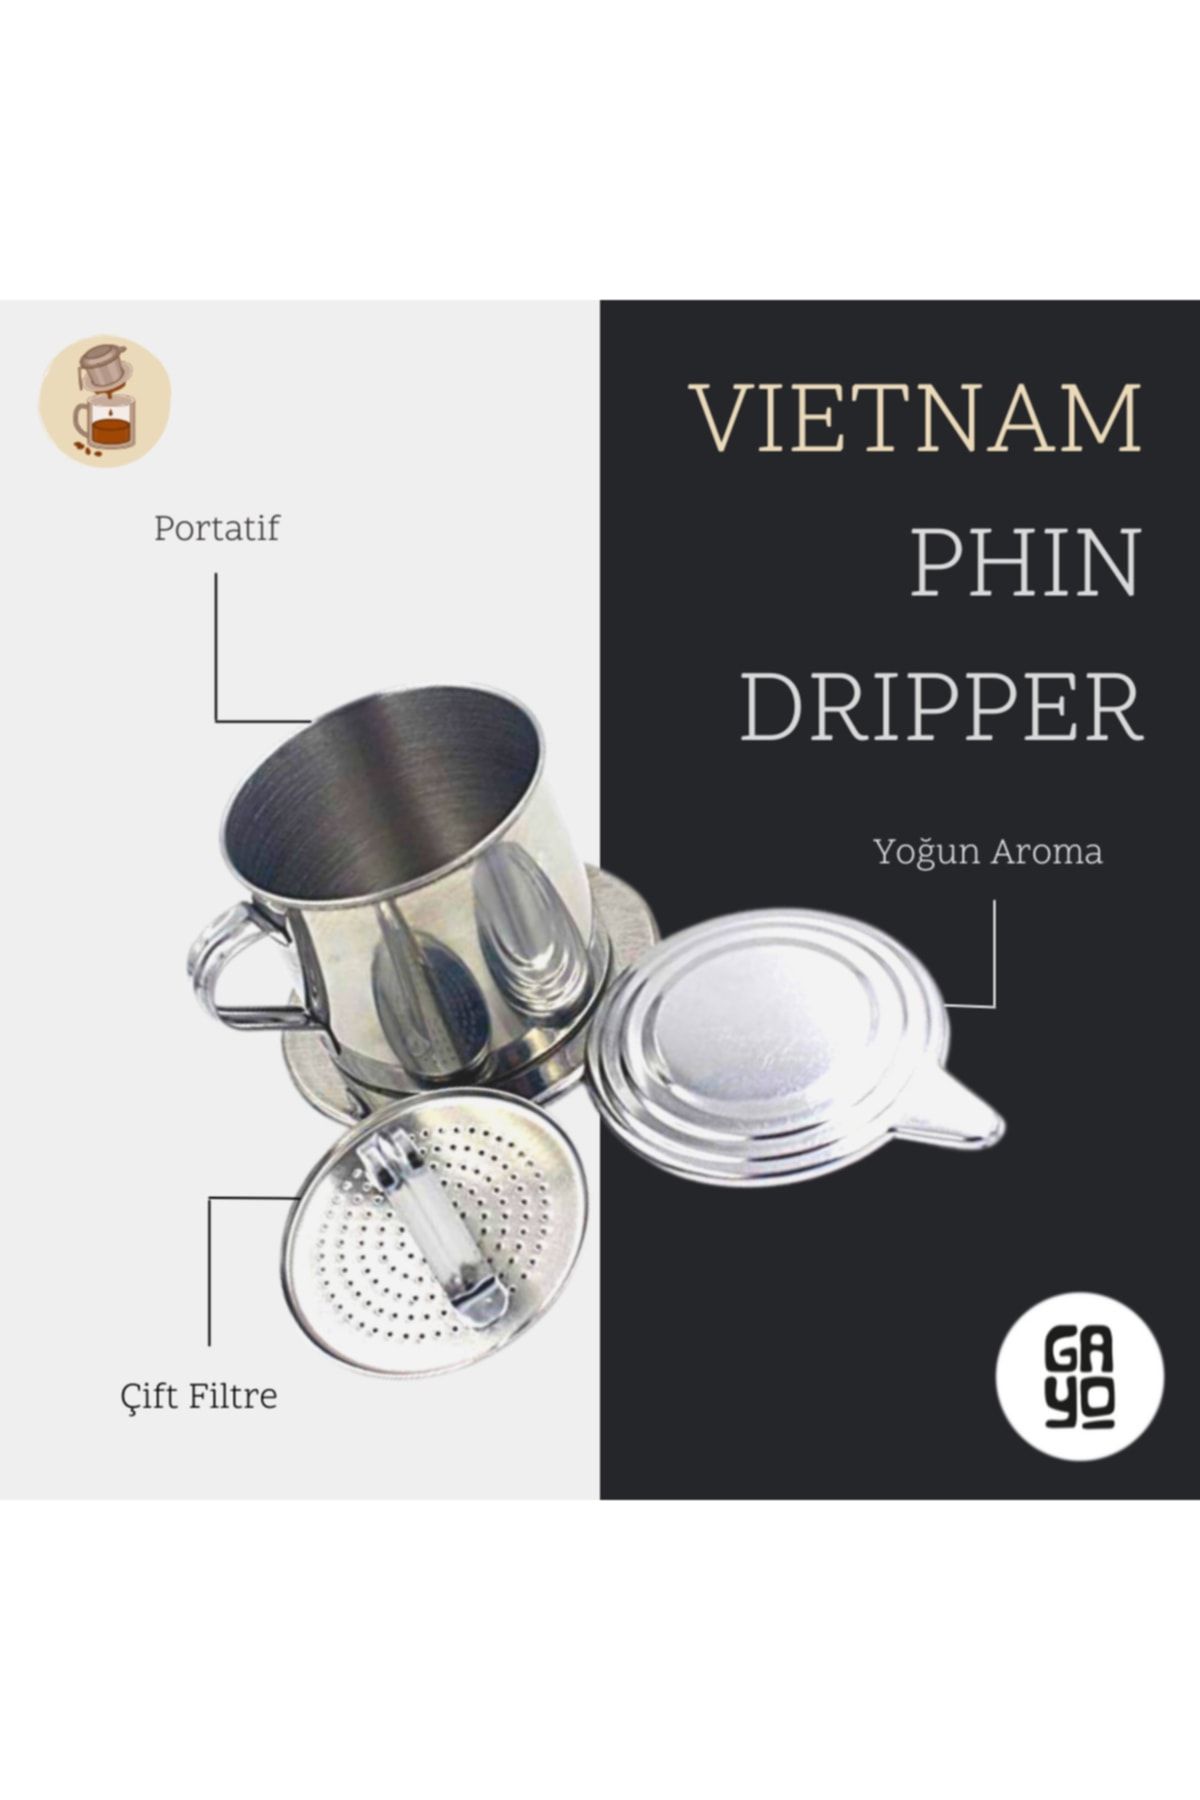 GAYO Vietnam Phin Dripper